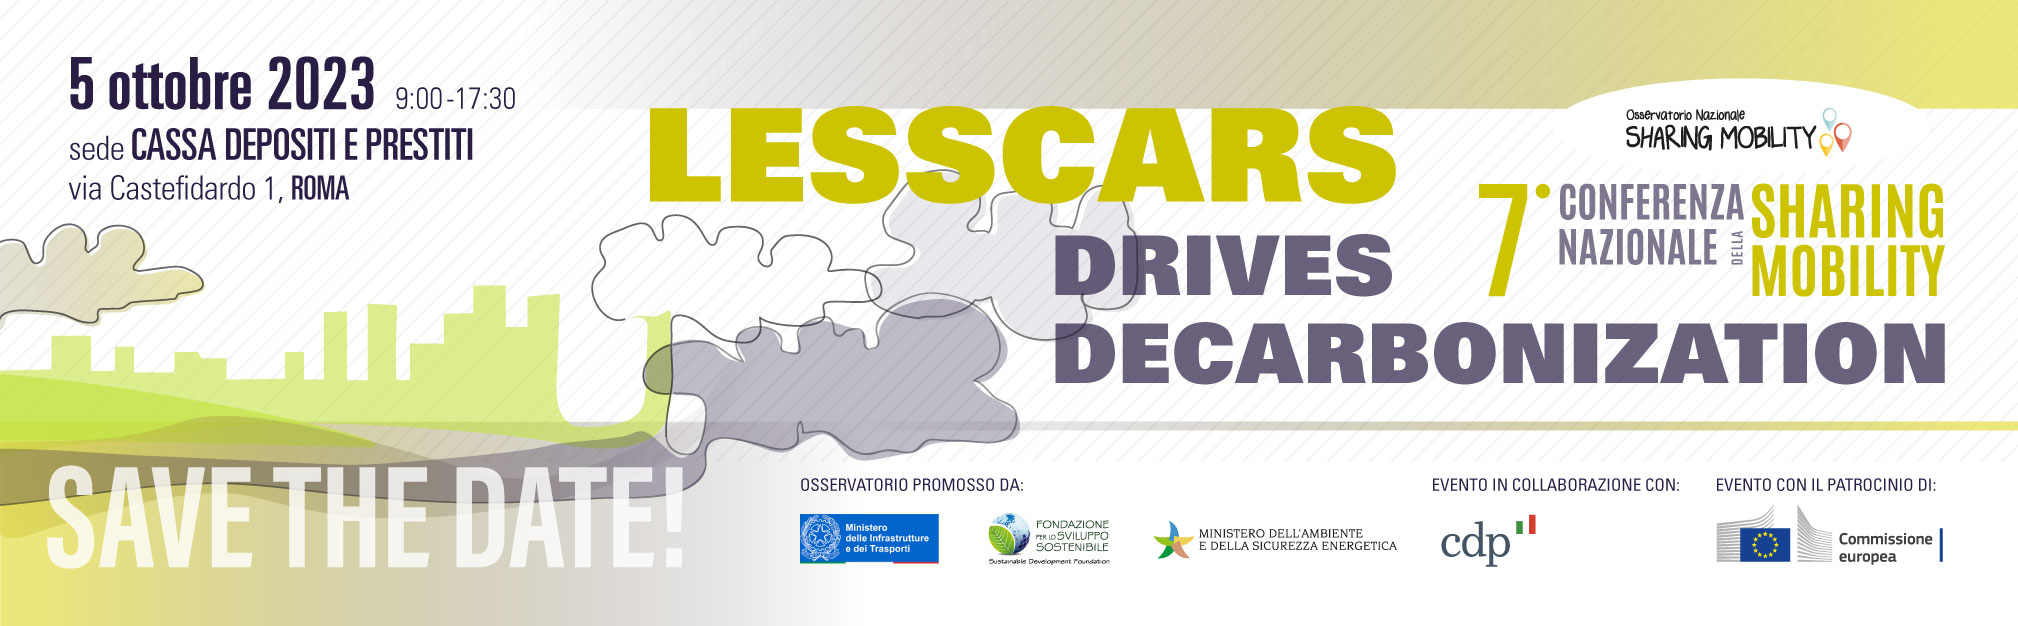 LESSCARS drives decarbonization